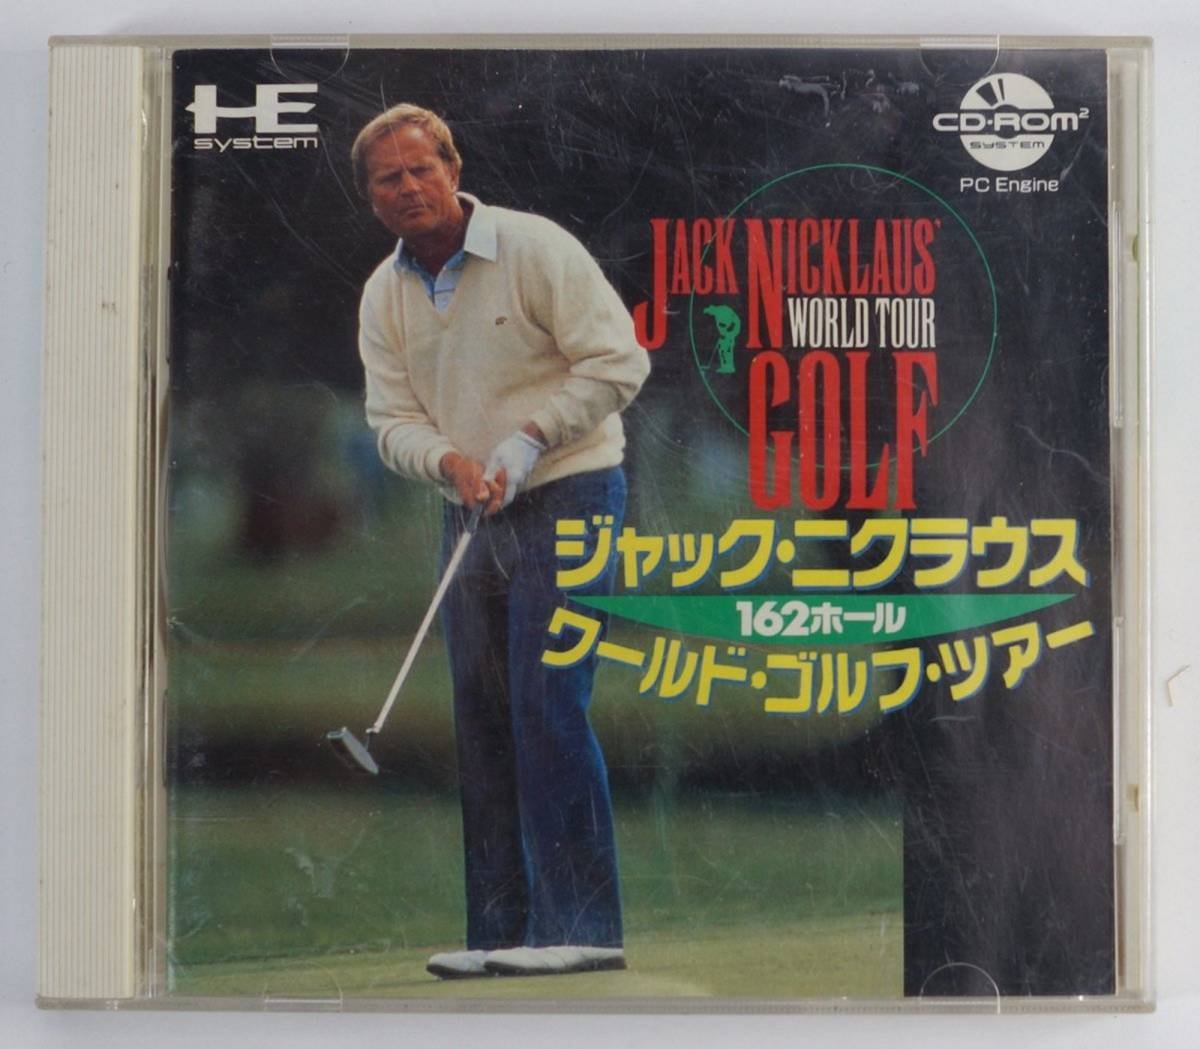 PC ENGINE CD ゲーム ジャック・ニクラウス162ホール ワールド・ゴルフ・ツアー Jack Nicklaus' World Tour Golf JCCD0003